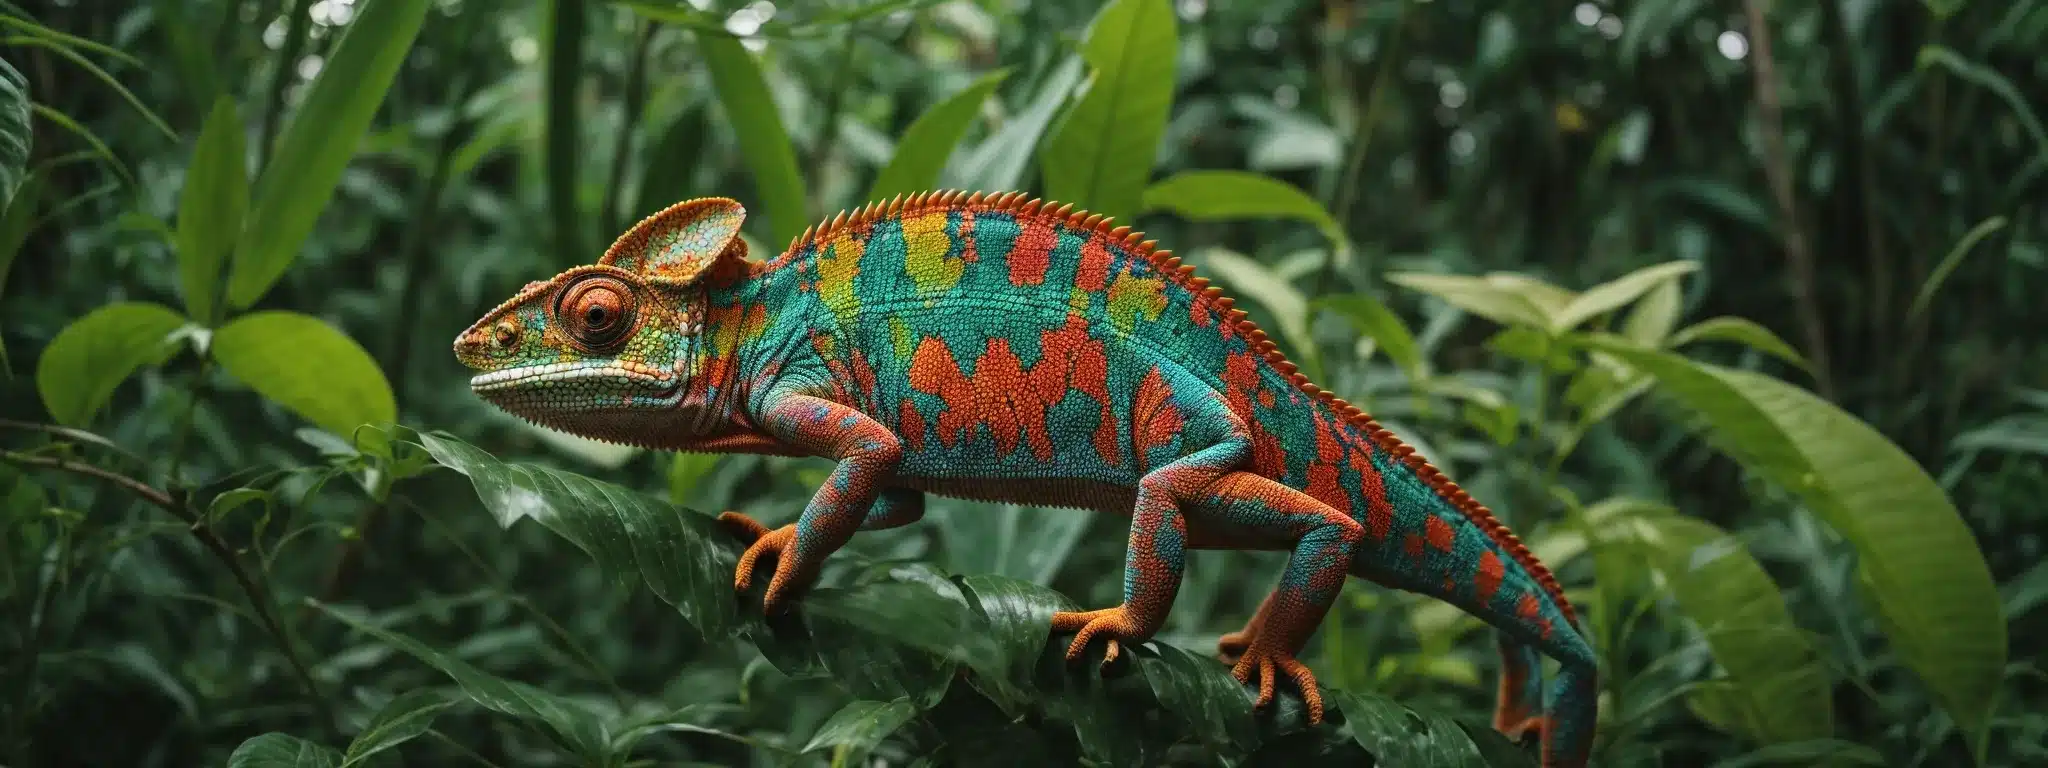 A Chameleon Adapting Its Colors Amongst A Vibrant, Dynamic Jungle Setting.